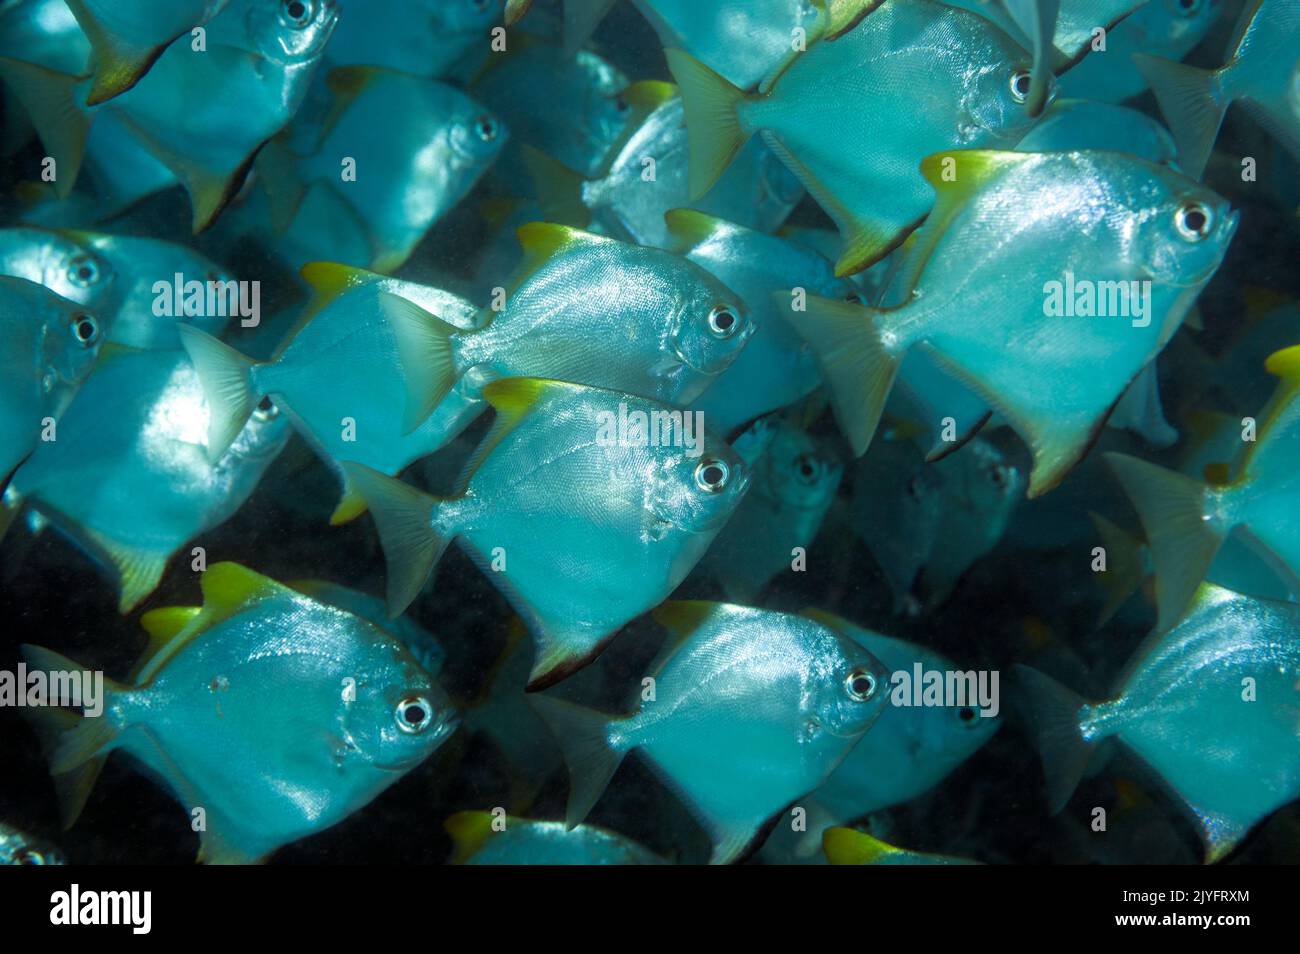 Diamondfishes, Monodactyus argenteus, Raja Ampat Indonesia. Stock Photo